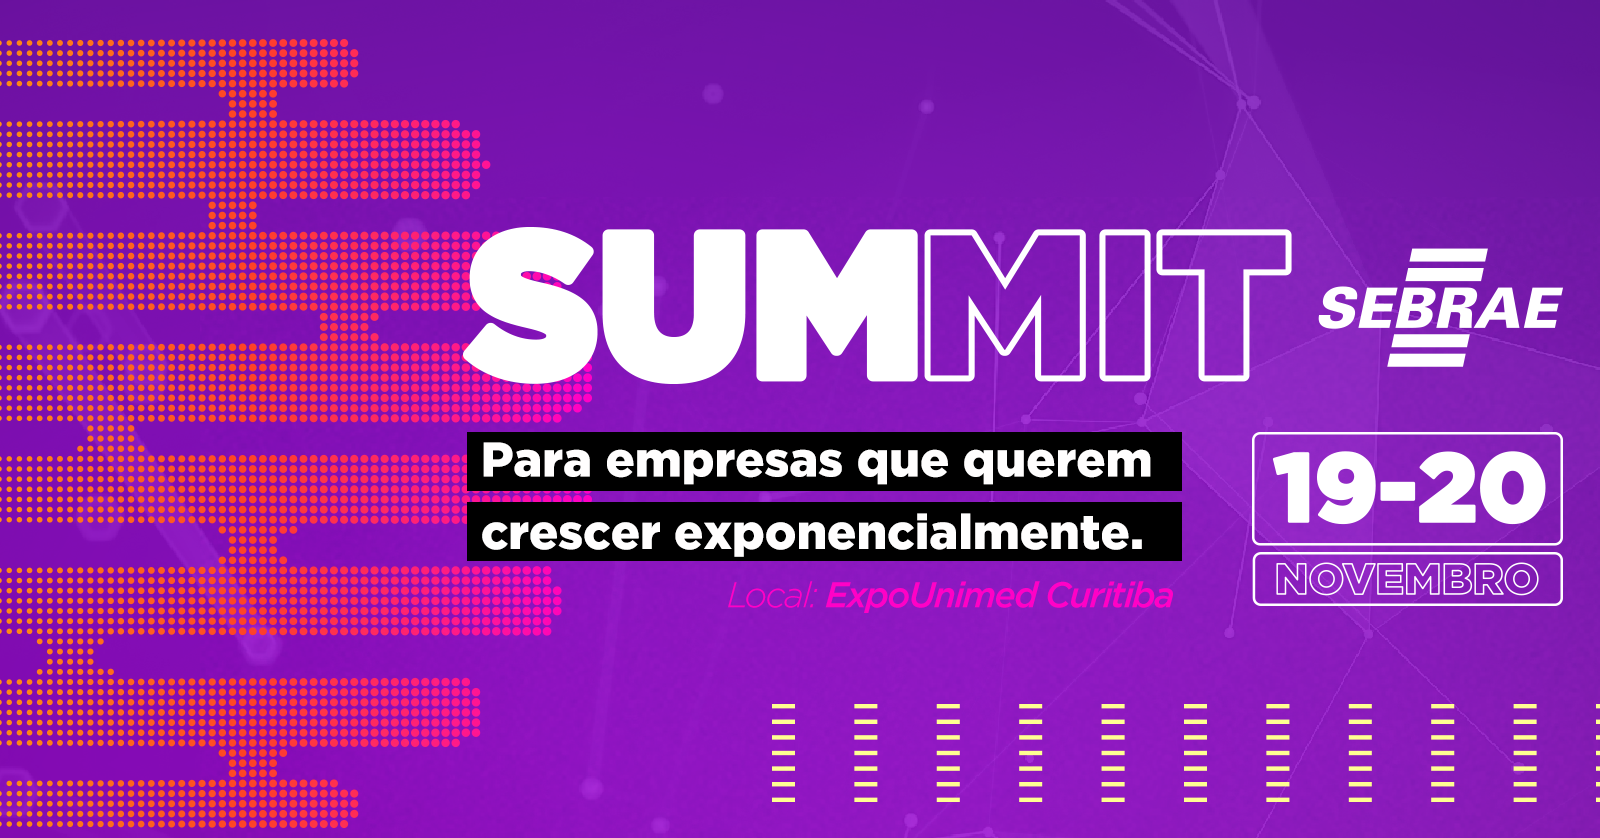 Summit Sebrae vai promover negócios e o ambiente empreendedor do Paraná